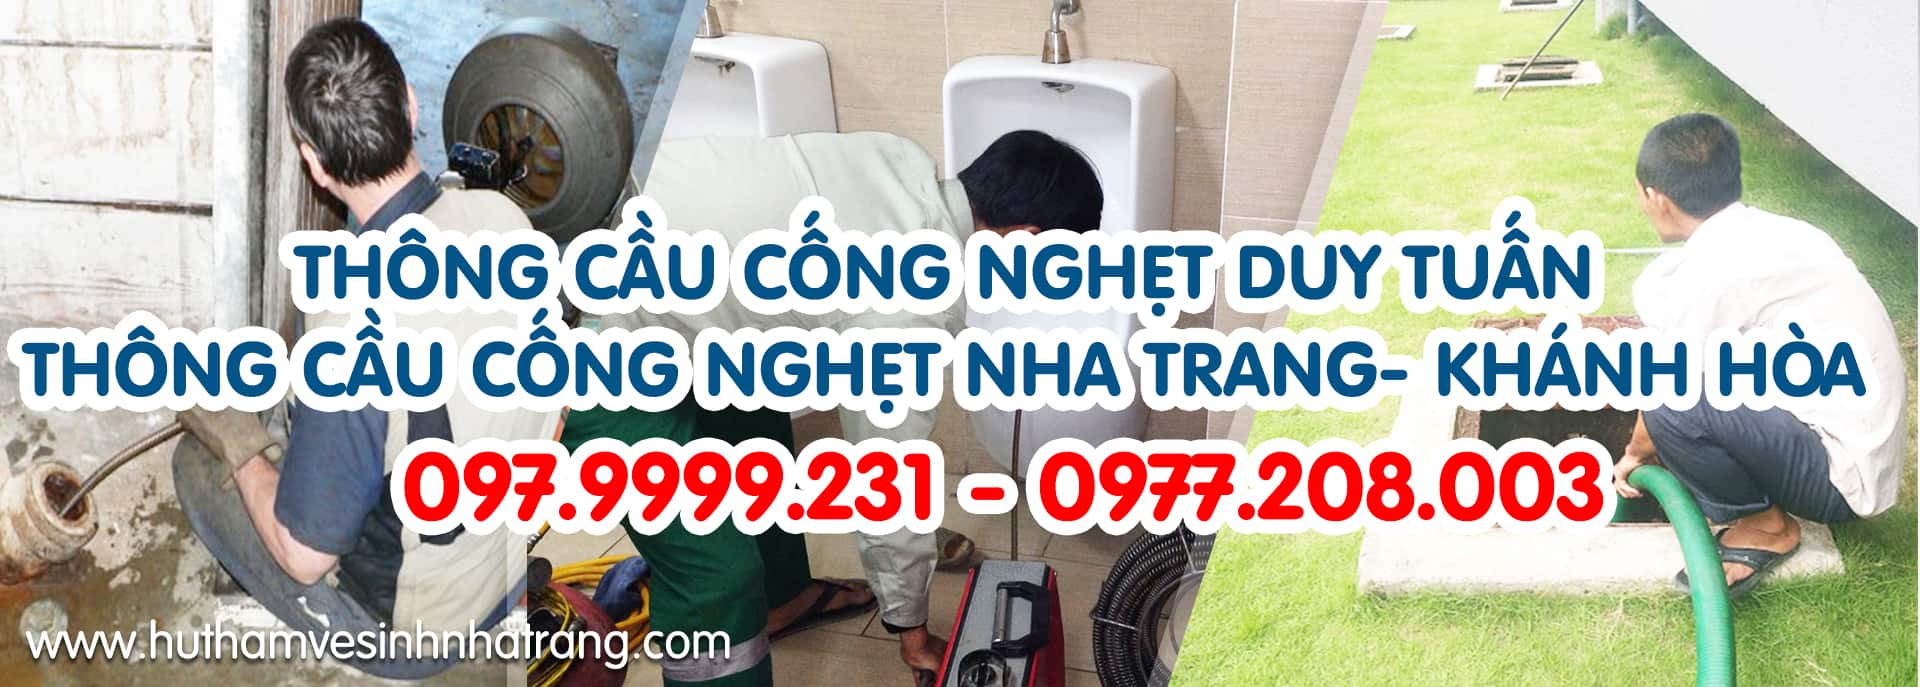 Dịch vụ thông cầu cống nghẹt Nha Trang